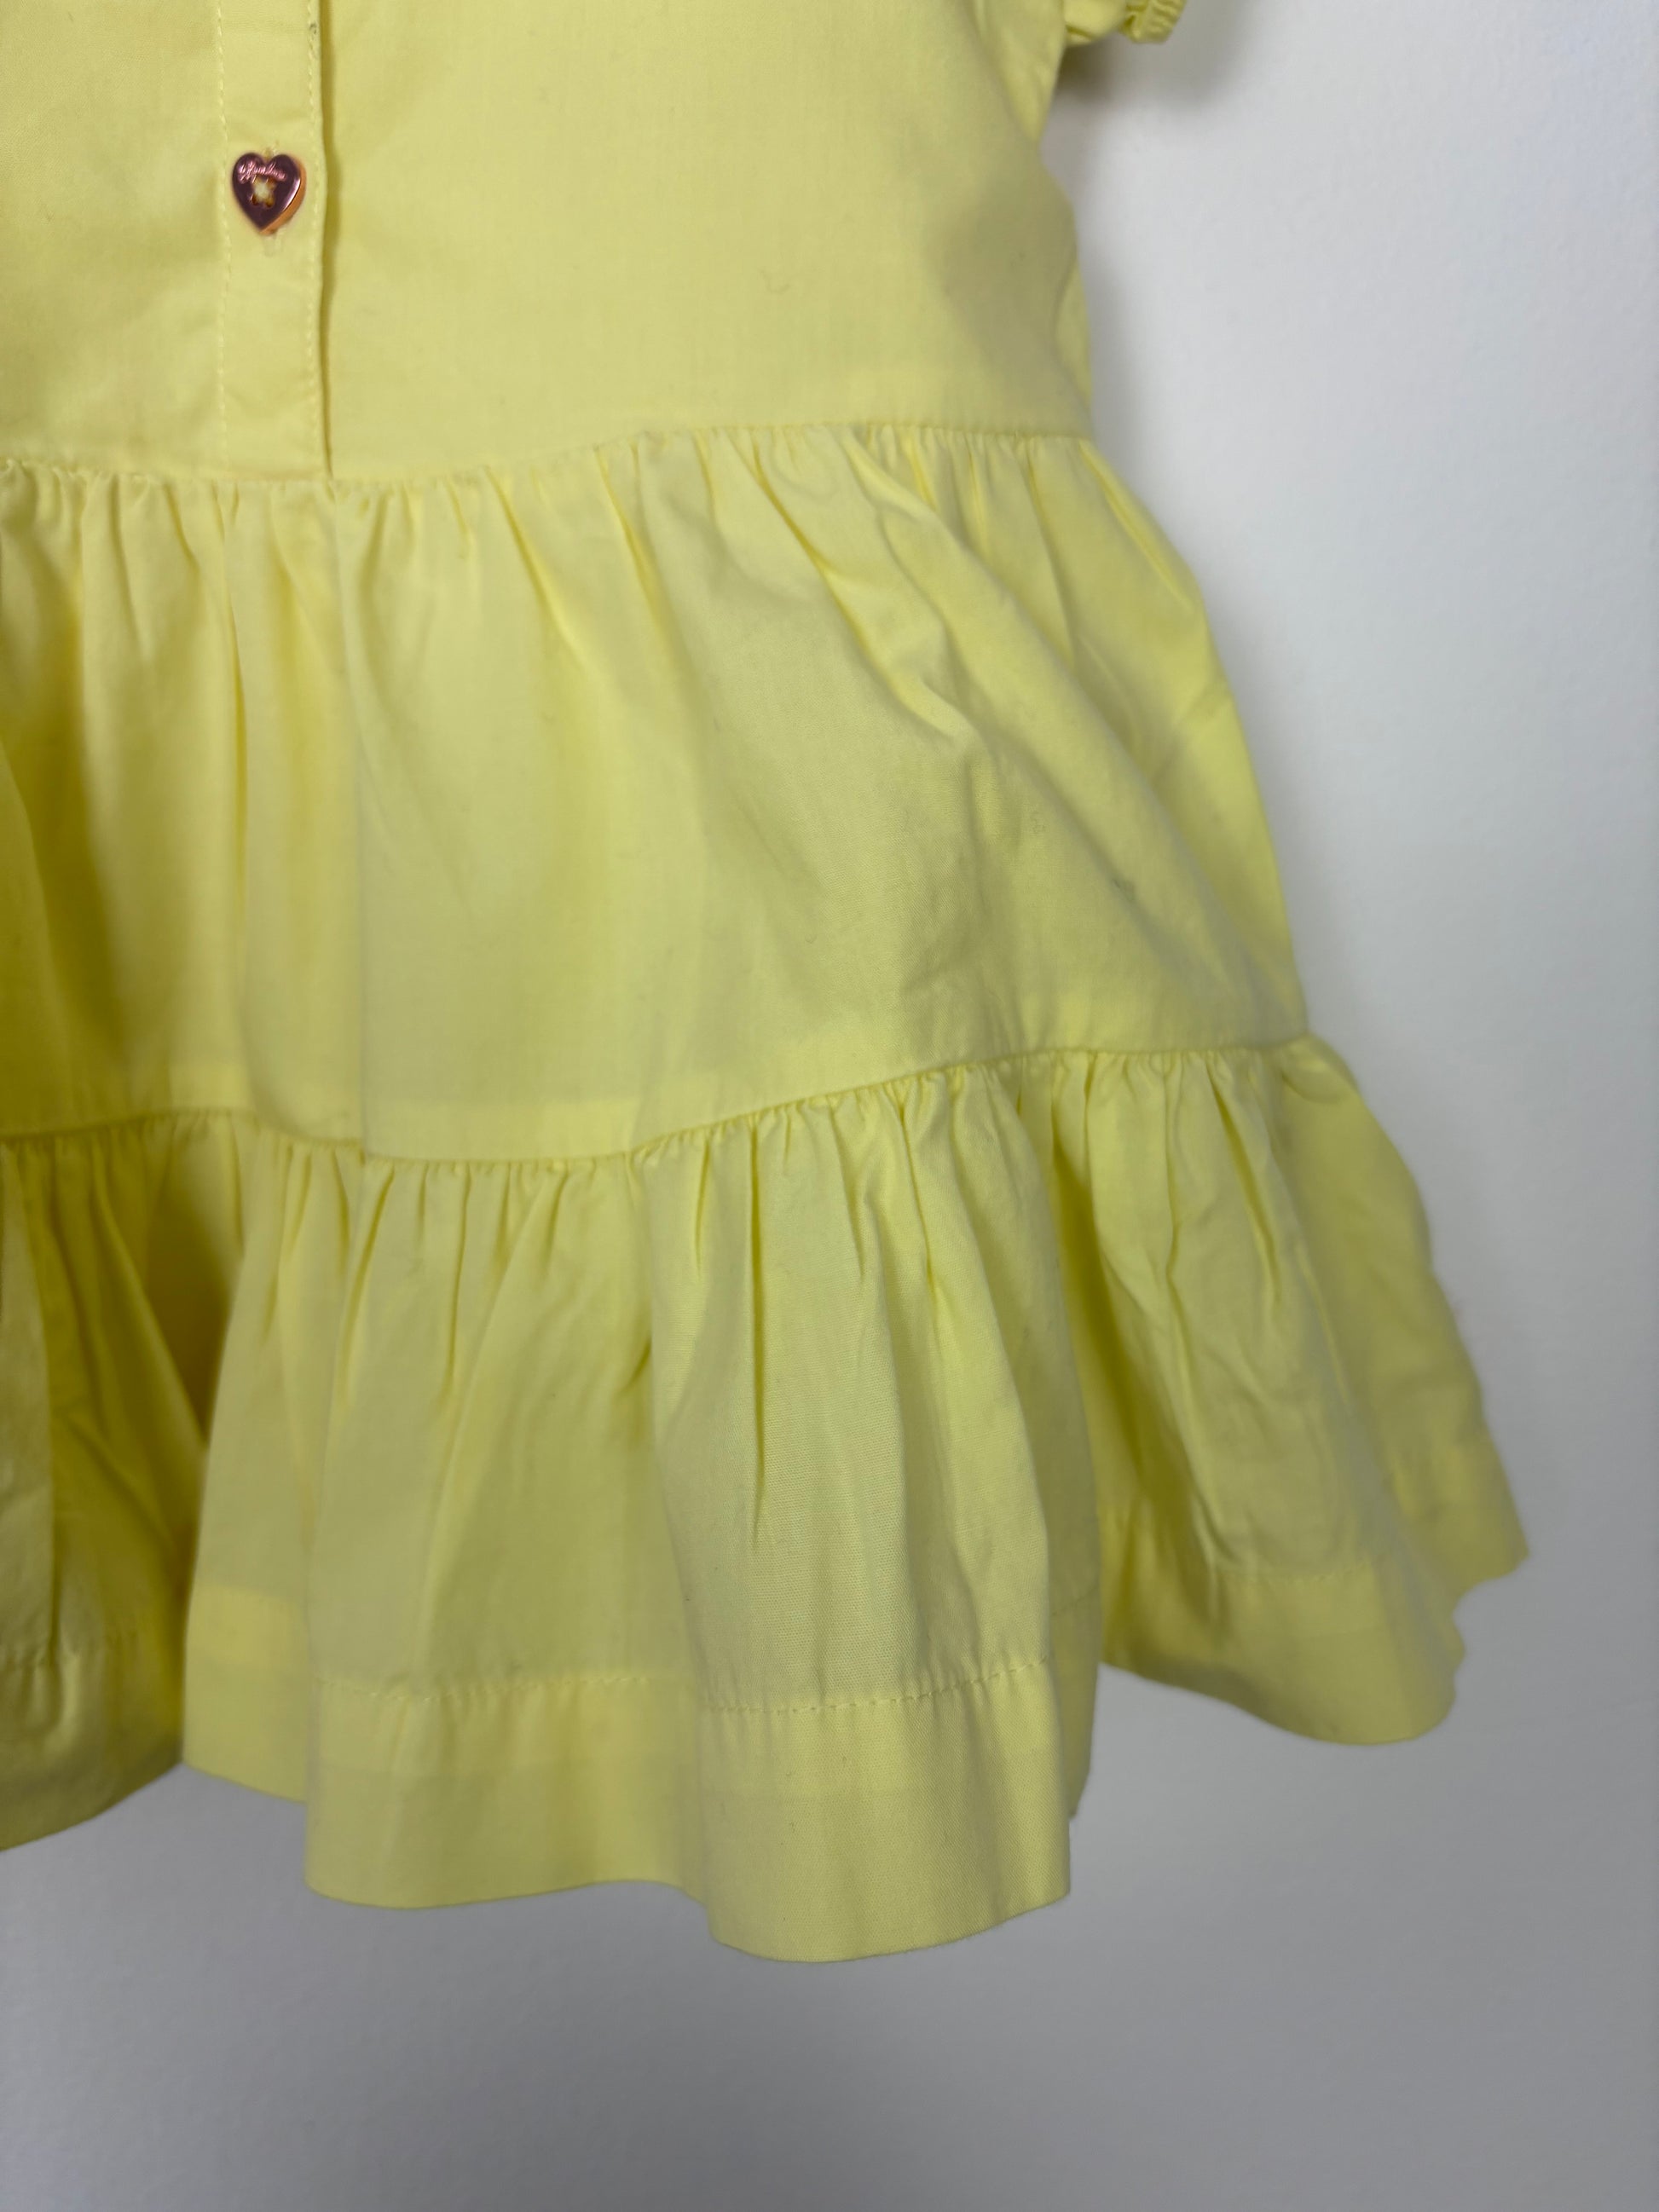 Ted Baker 3-6 Months-Dresses-Second Snuggle Preloved